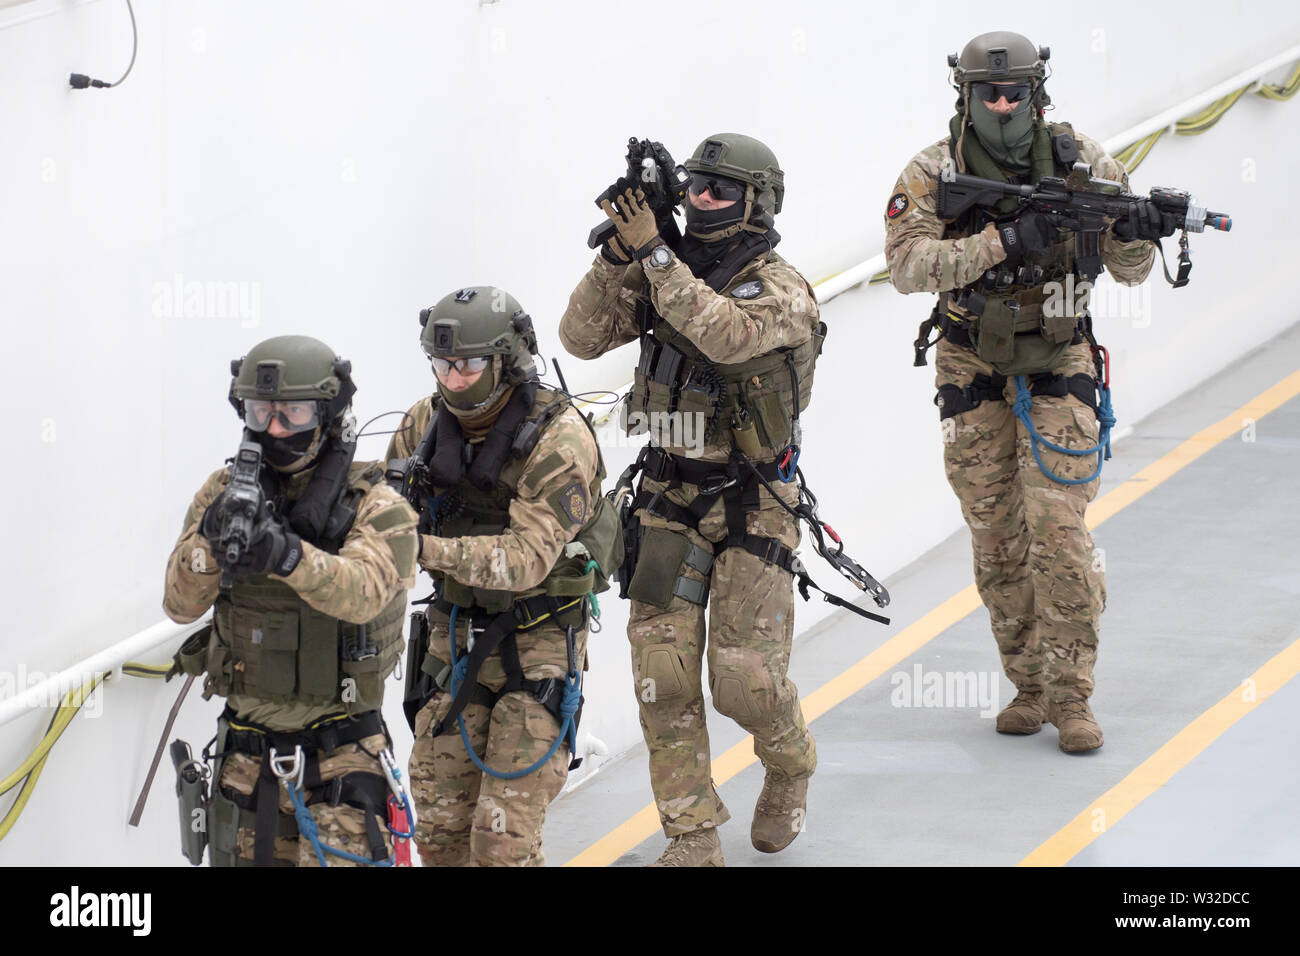 Des soldats des forces spéciales de la marine polonaise, Jednostka Wojskowa Formoza (unité militaire Formoza) au cours d'exercices à Gdynia, Pologne. 27 juin 2019 © Wojciech Banque D'Images